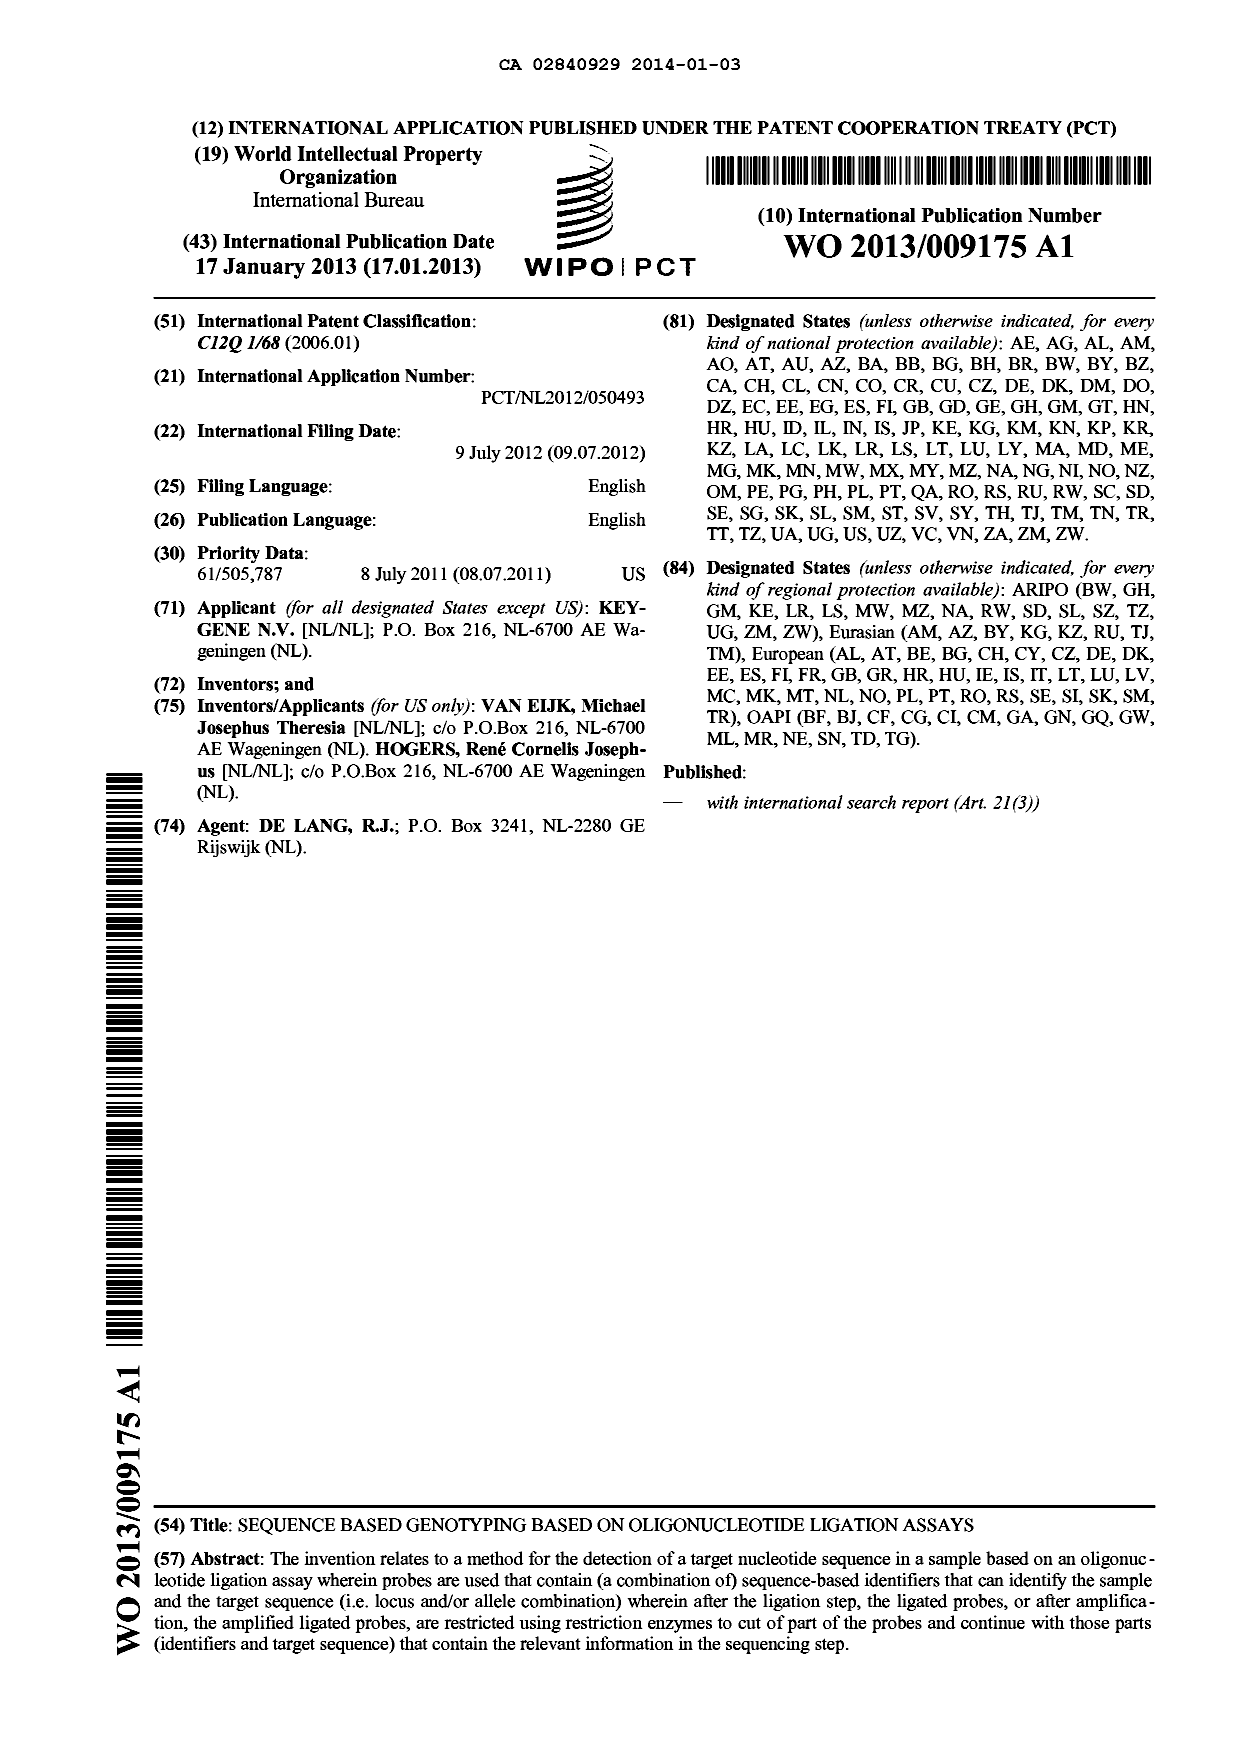 Document de brevet canadien 2840929. Abrégé 20140103. Image 1 de 1